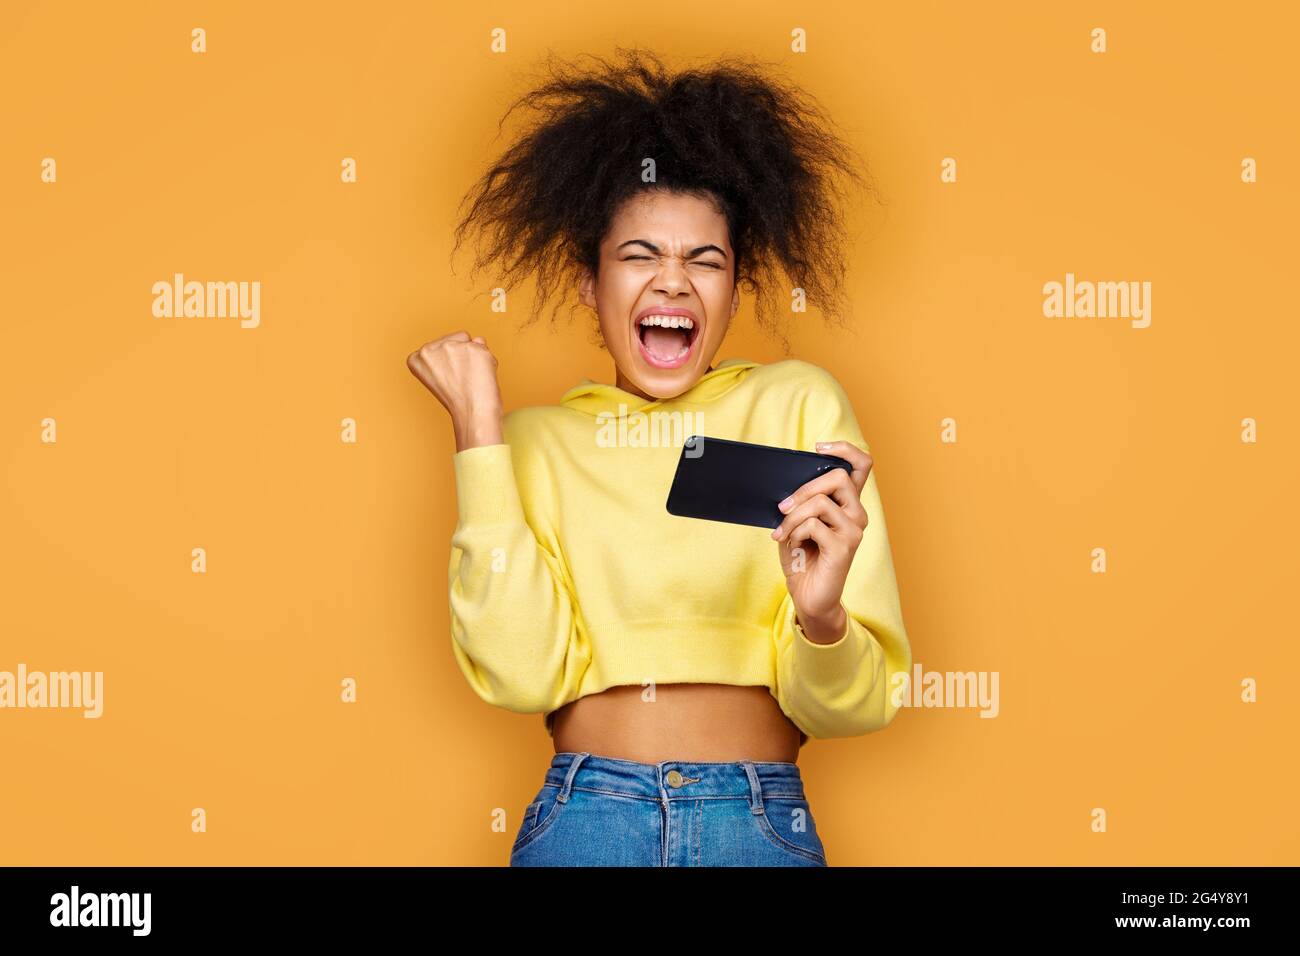 Glückliches Mädchen geballte Faust in Siegesgeste, Sieg im Spiel. Foto von afroamerikanischen Mädchen mit Smartphone auf gelbem Hintergrund Stockfoto